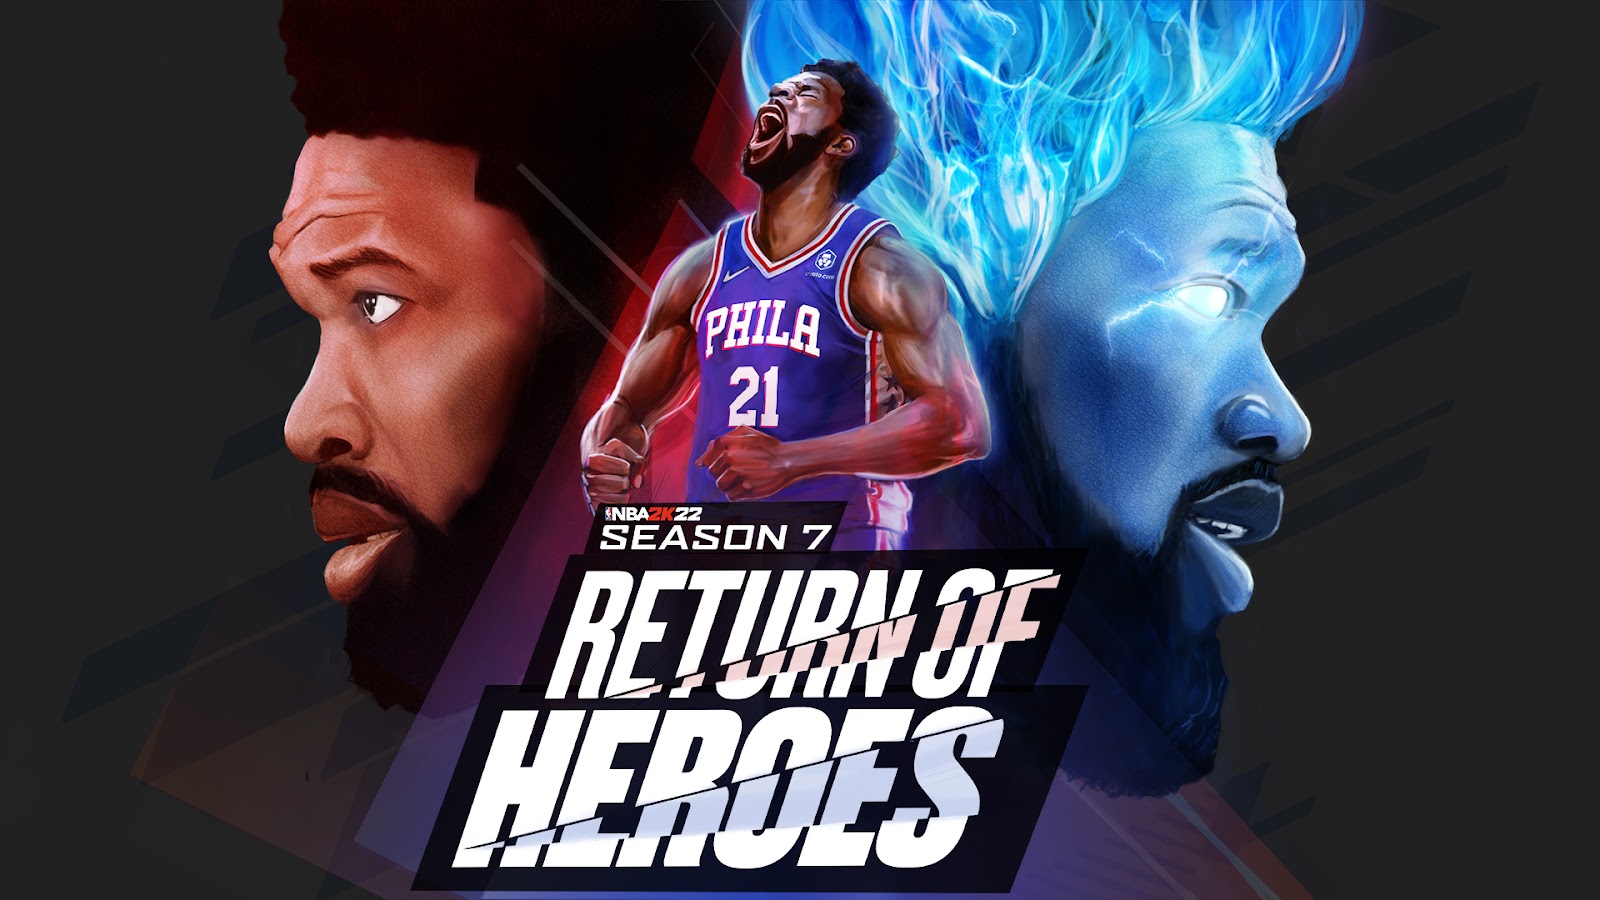 Season 7 Return of Heroes Image 1